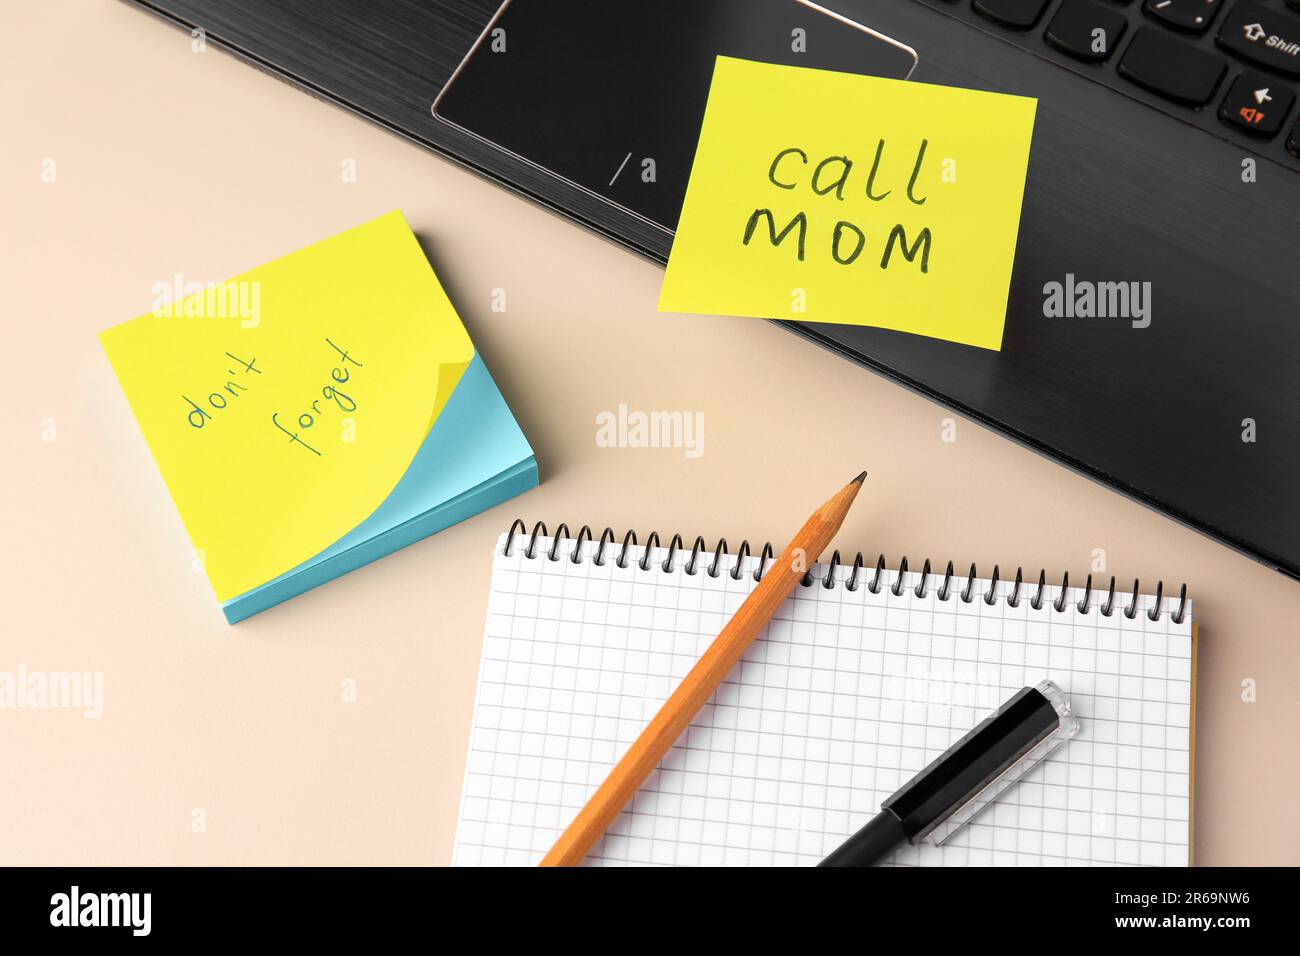 Notizen in Papierform mit Erinnerungen, Notizbuch und Laptop auf beigefarbenem Tisch, Ansicht oben Stockfoto